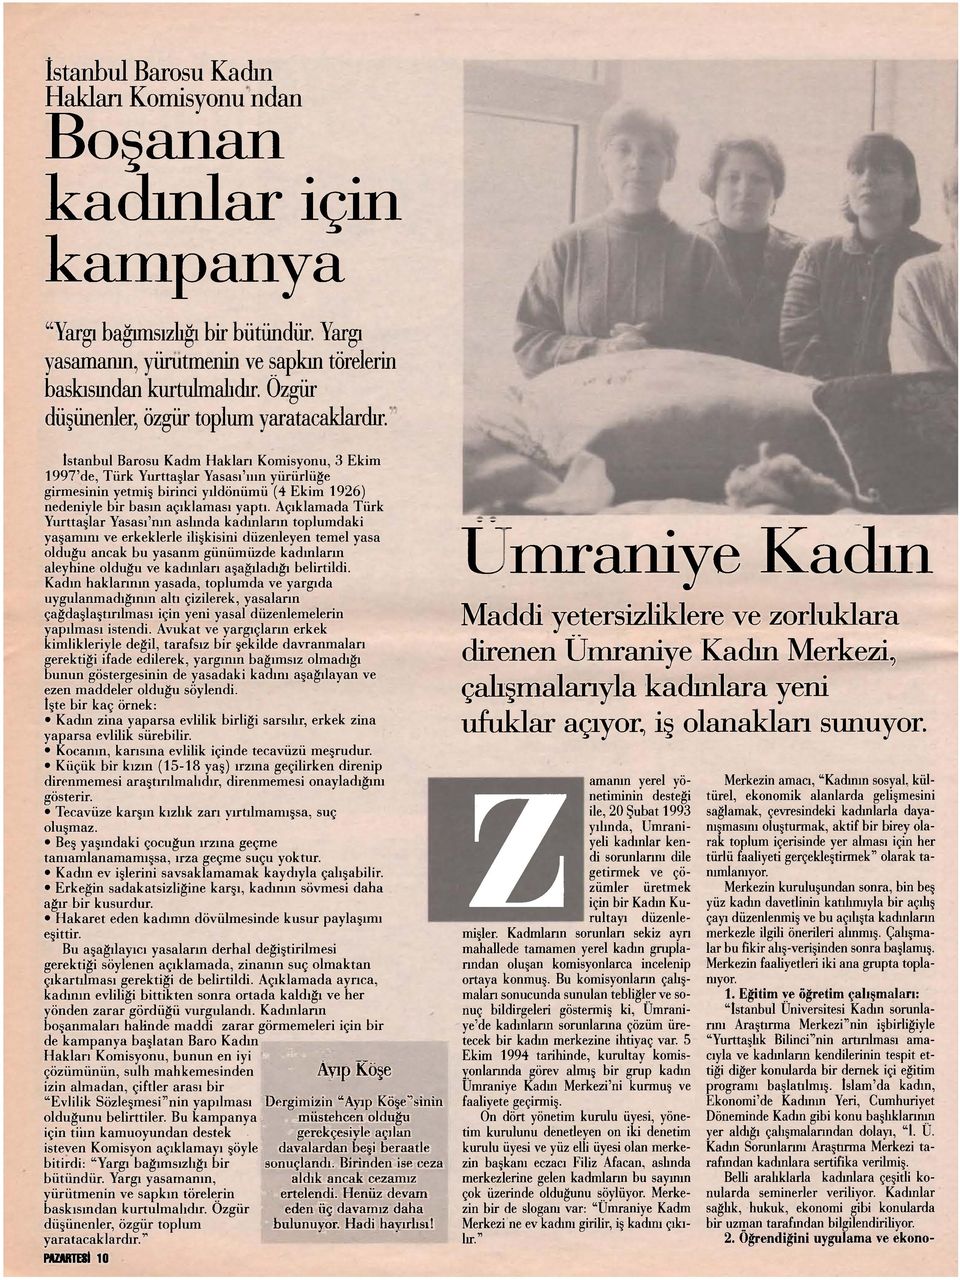 İstanbul Barosu Kadm Hakları Komisyonu, 3 Ekim 1997'de, Türk Yurttaşlar Yasası'ııın yürürlüğe girmesinin yetmiş birinci yıldönümü (4 Ekim 1926) nedeniyle bir basın açıklaması yaptı.